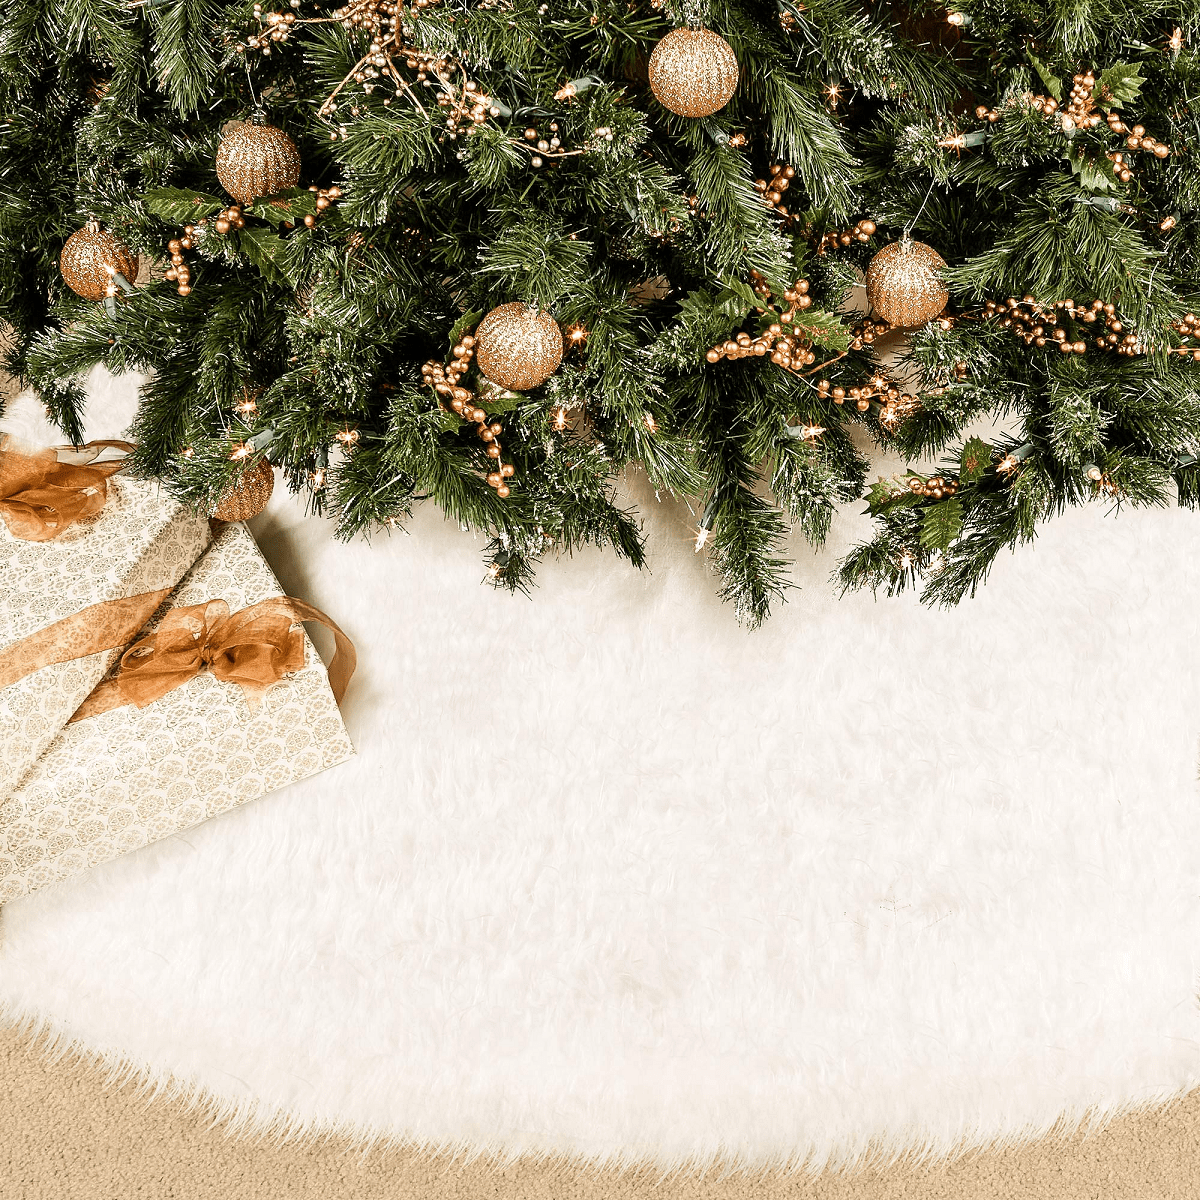 1 pcs White Christmas Tree Skirt Plush Mat Faux Fur Xmas Floor Mat Decoration 